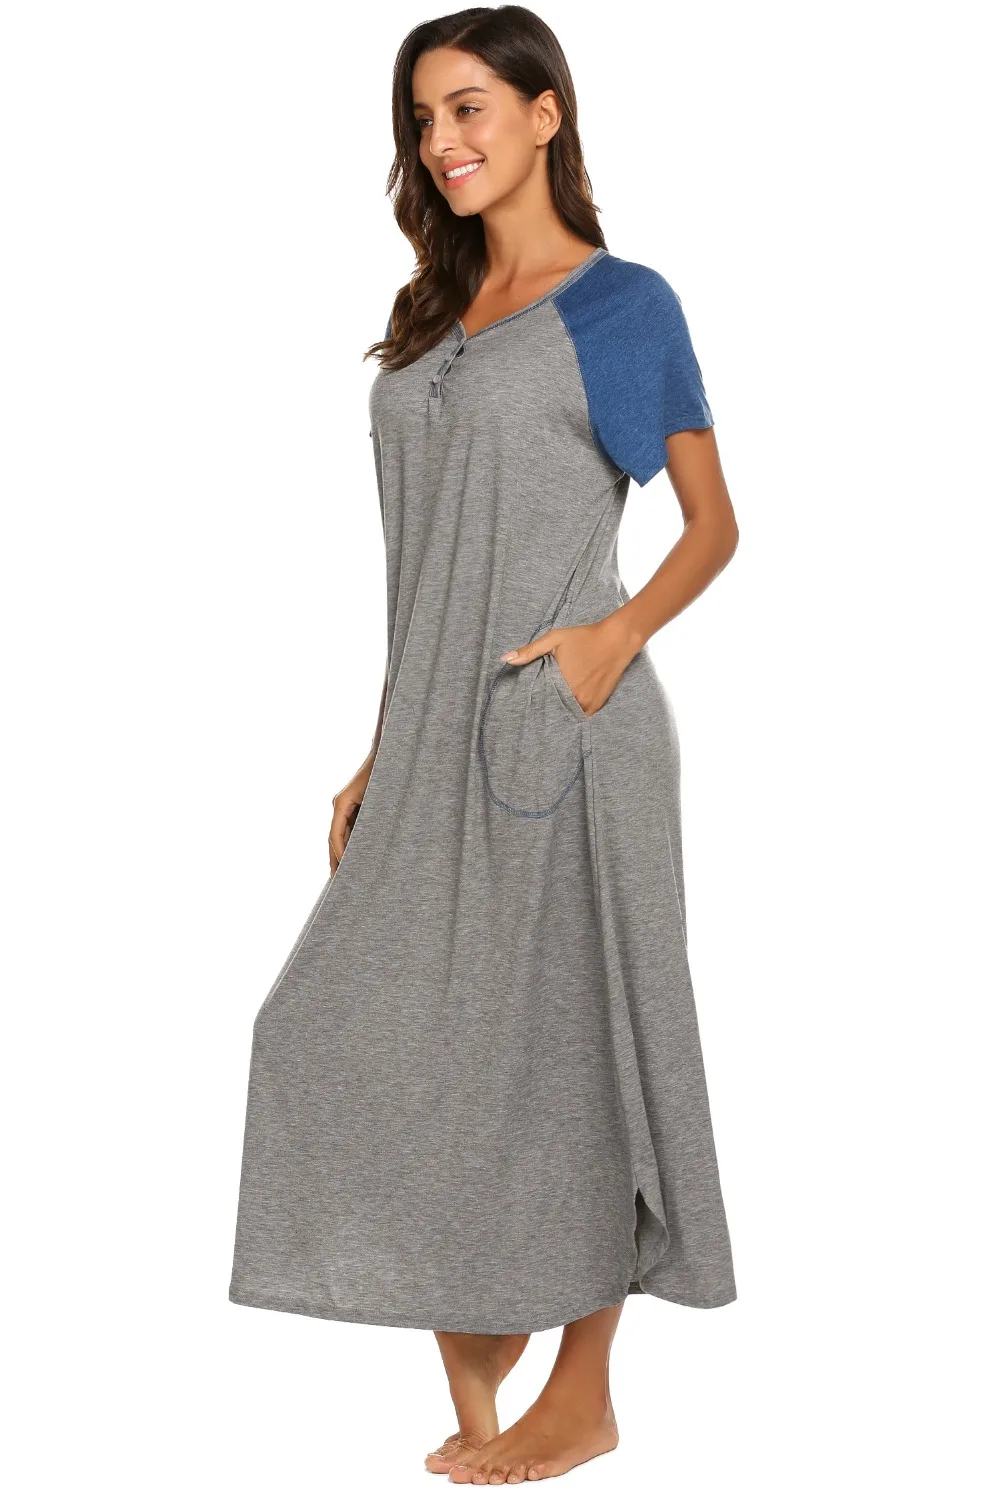 Ekouaer женская ночная рубашка, одежда для сна, платье с v-образным вырезом, короткий рукав, пэтчворк, длинная ночная рубашка, сорочка, ночная рубашка, мягкое платье для отдыха